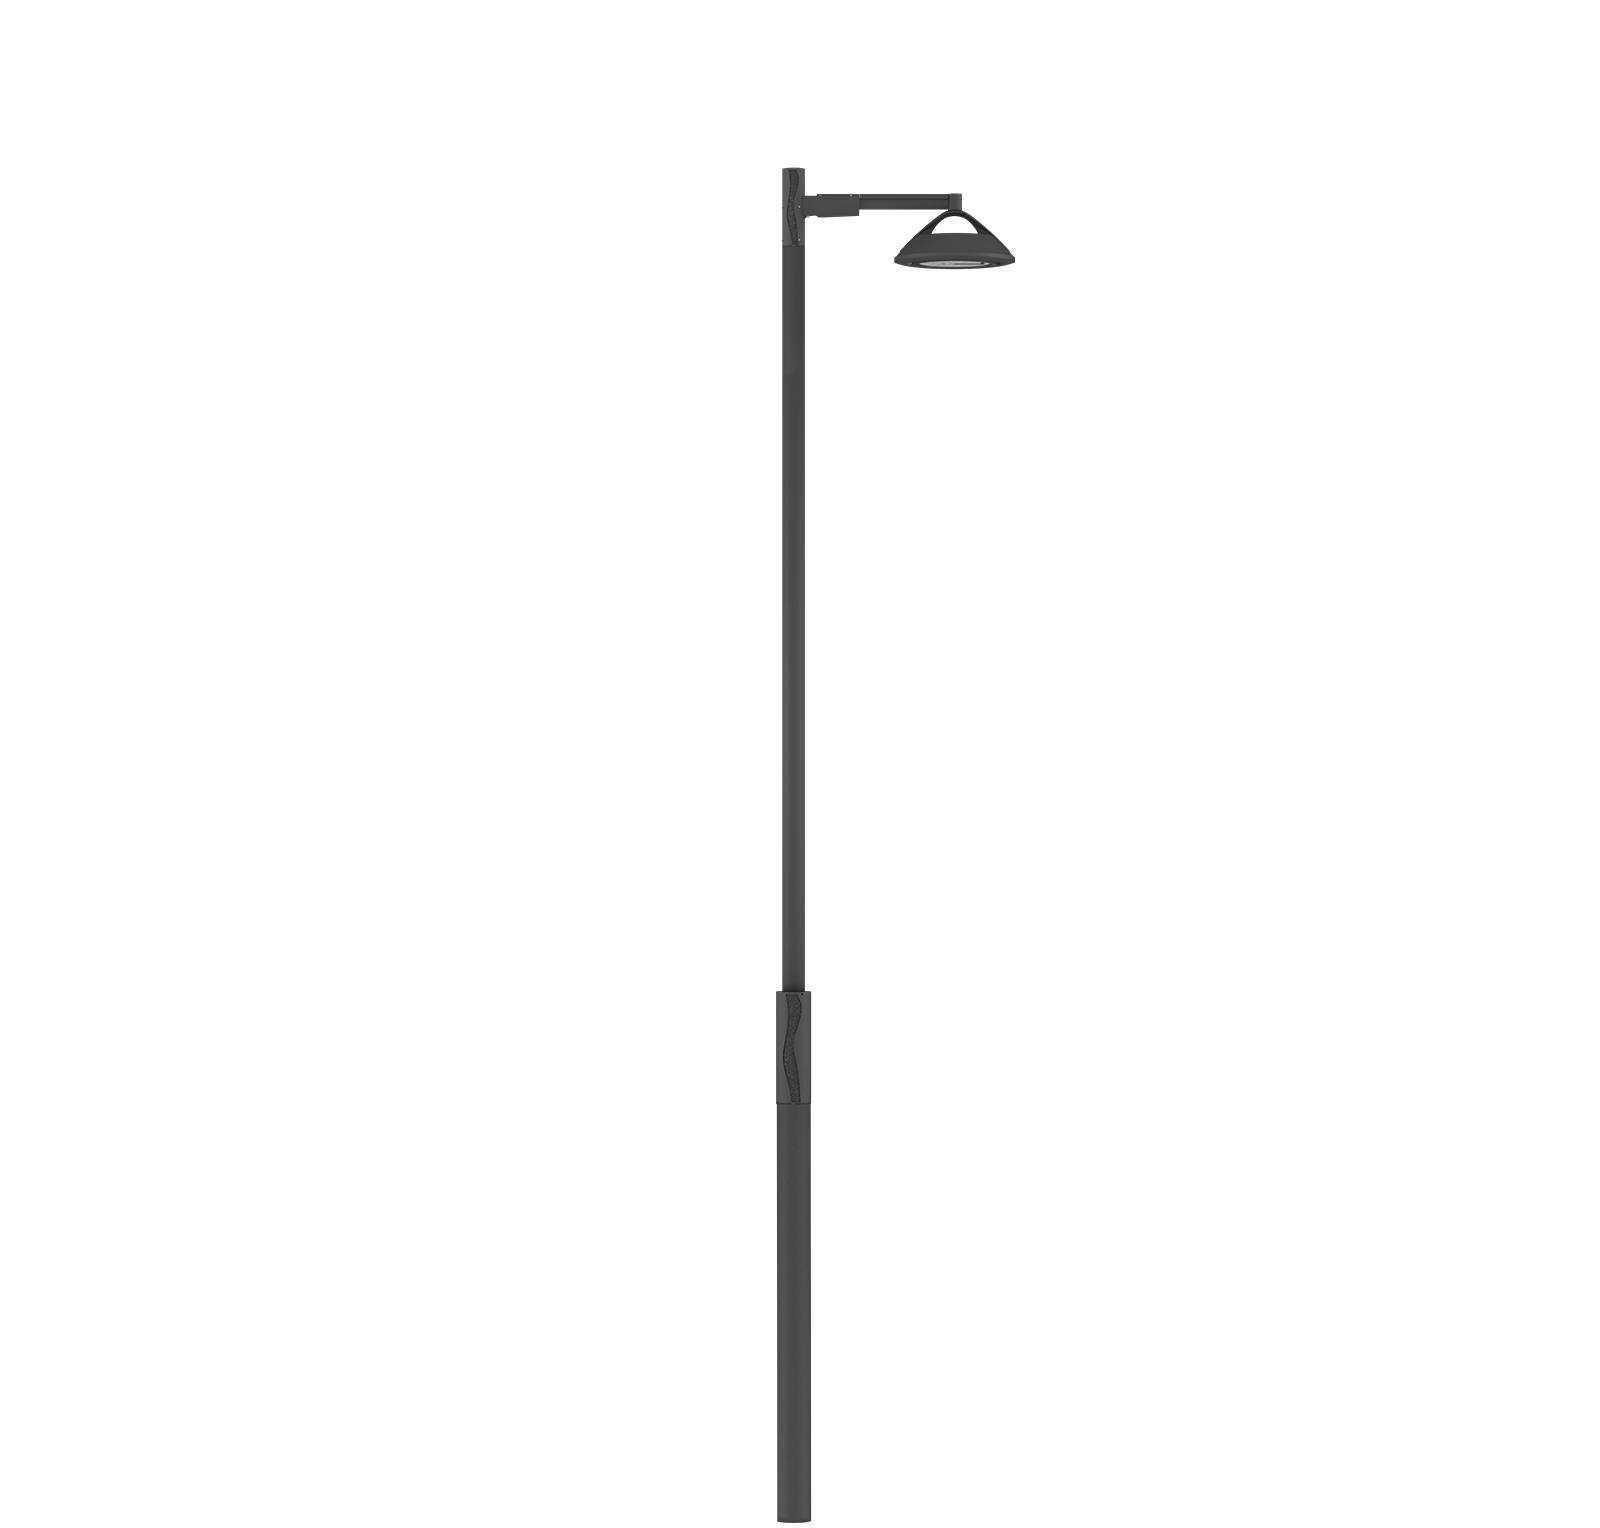 Mâts d’éclairage public PD pour lampadaire DELOS | Fabrication italienne